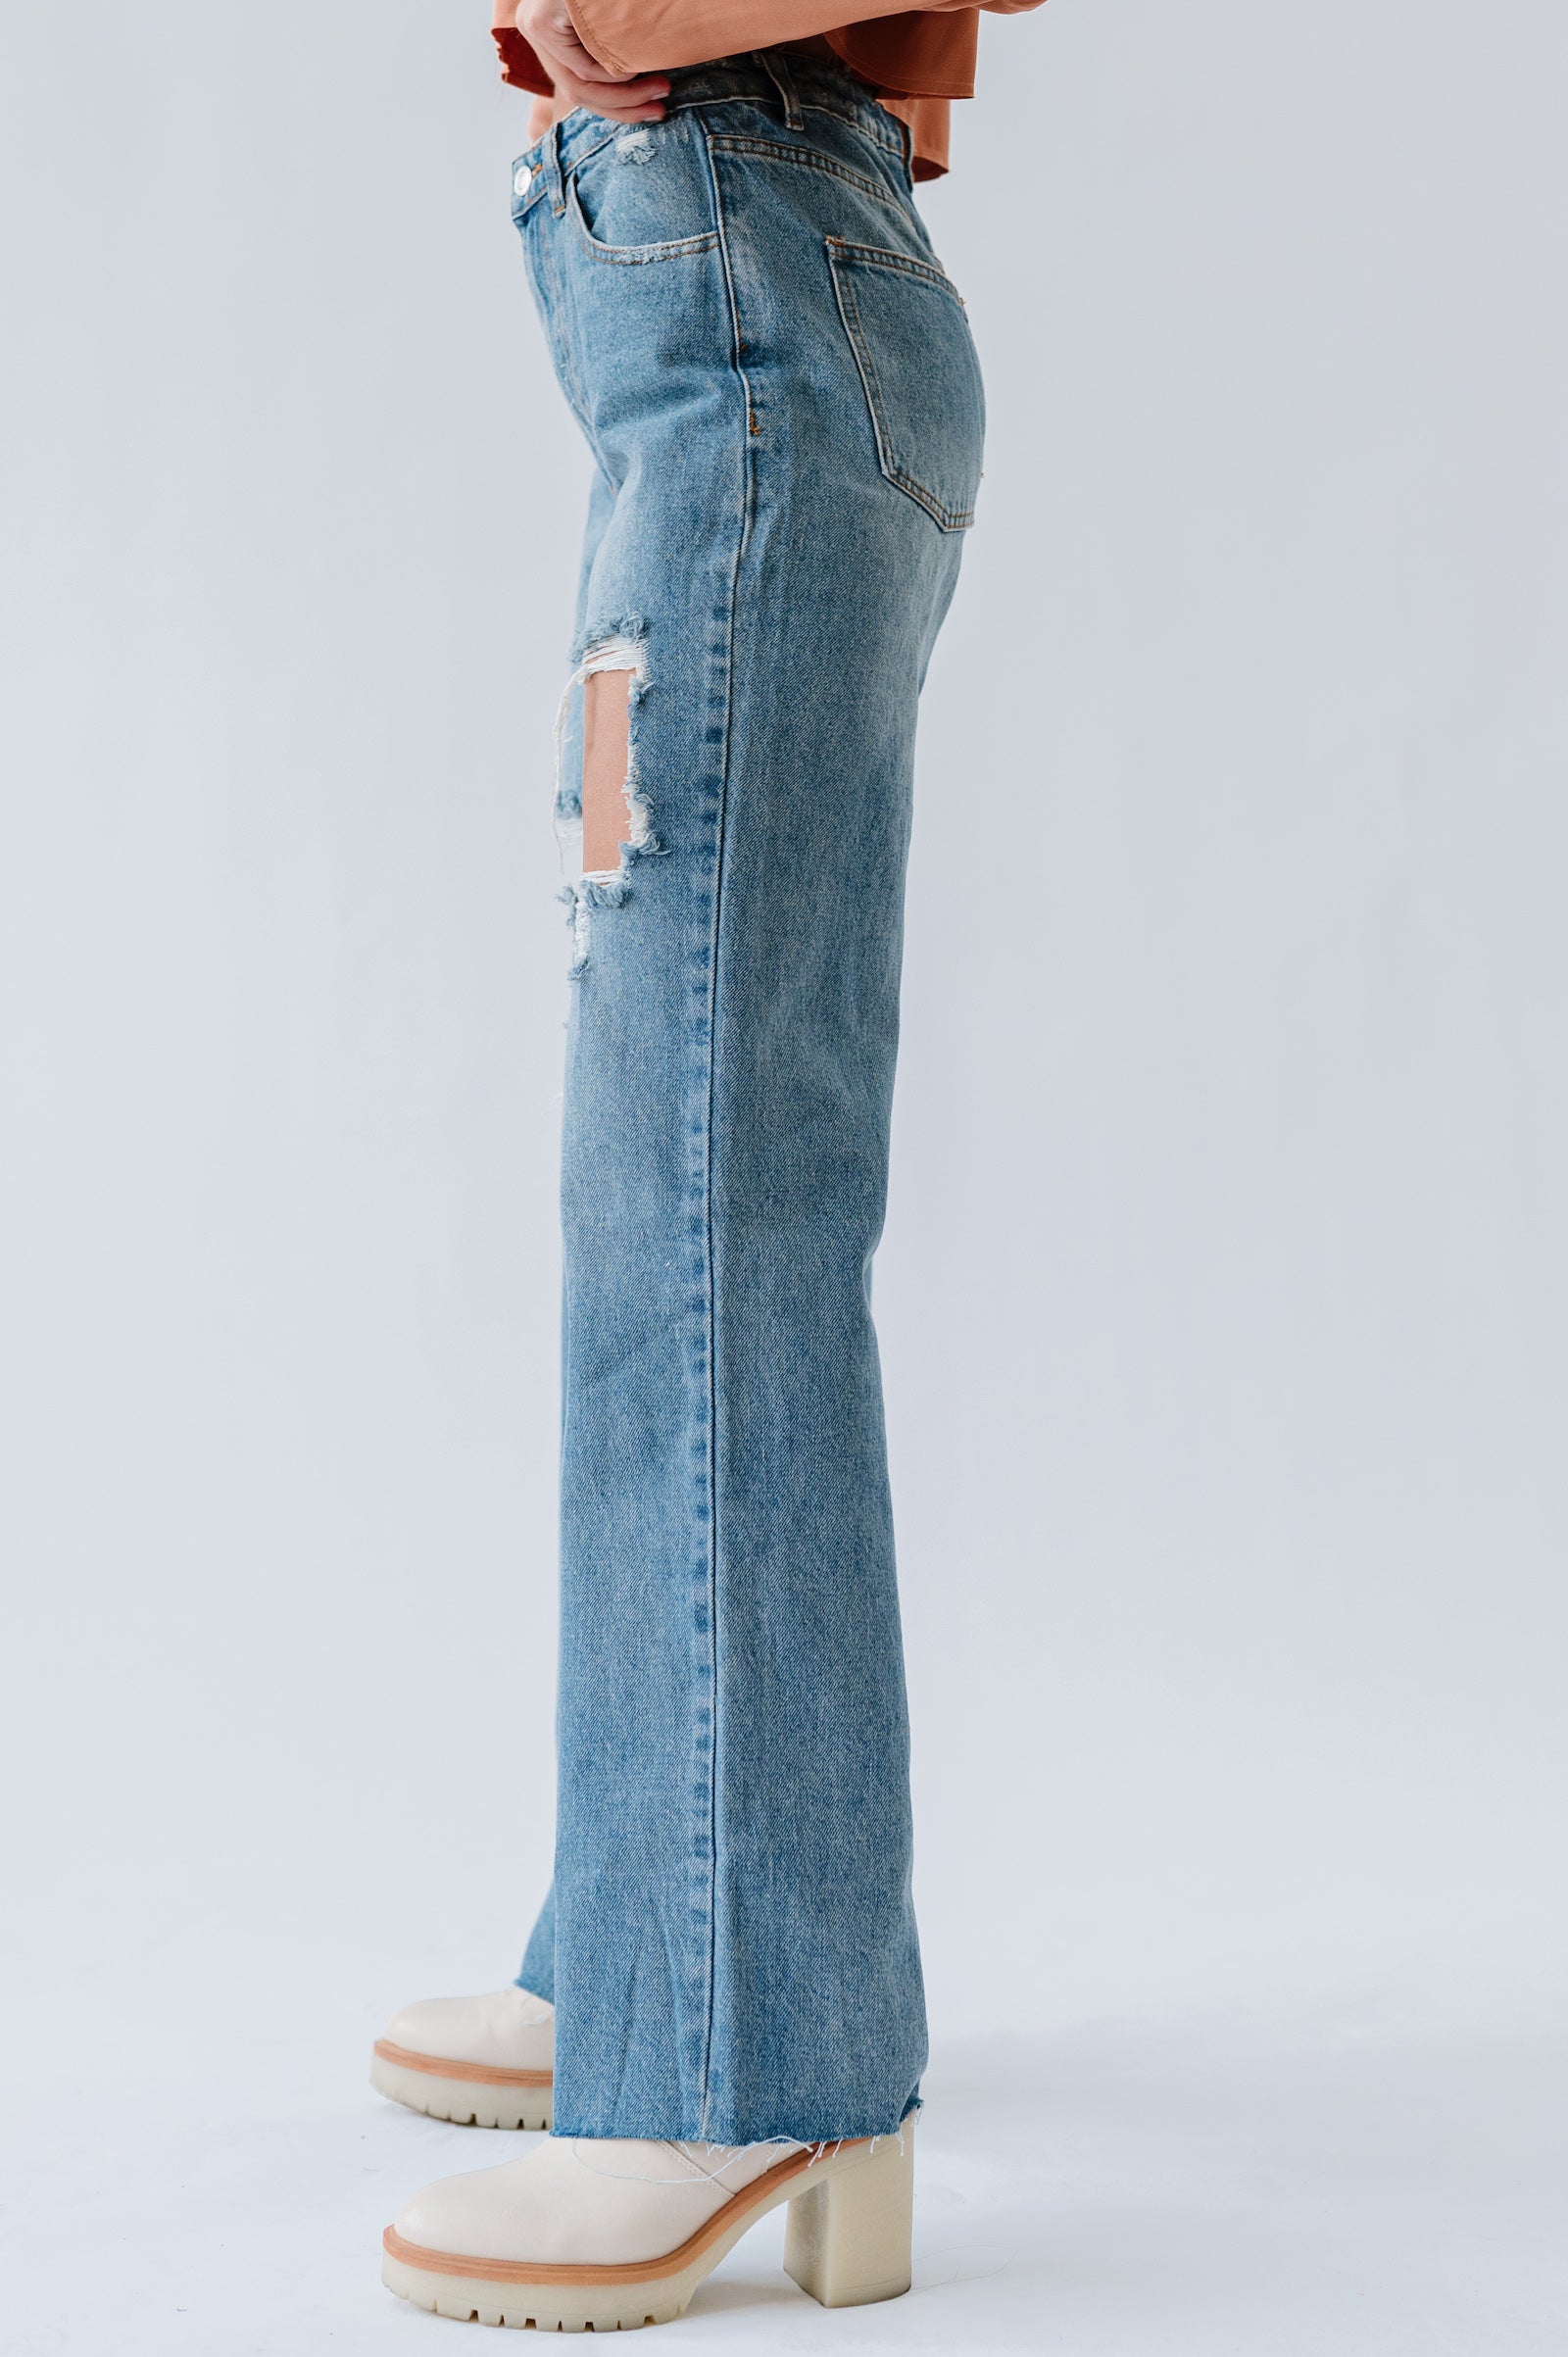 High waist and wide leg denim jeans